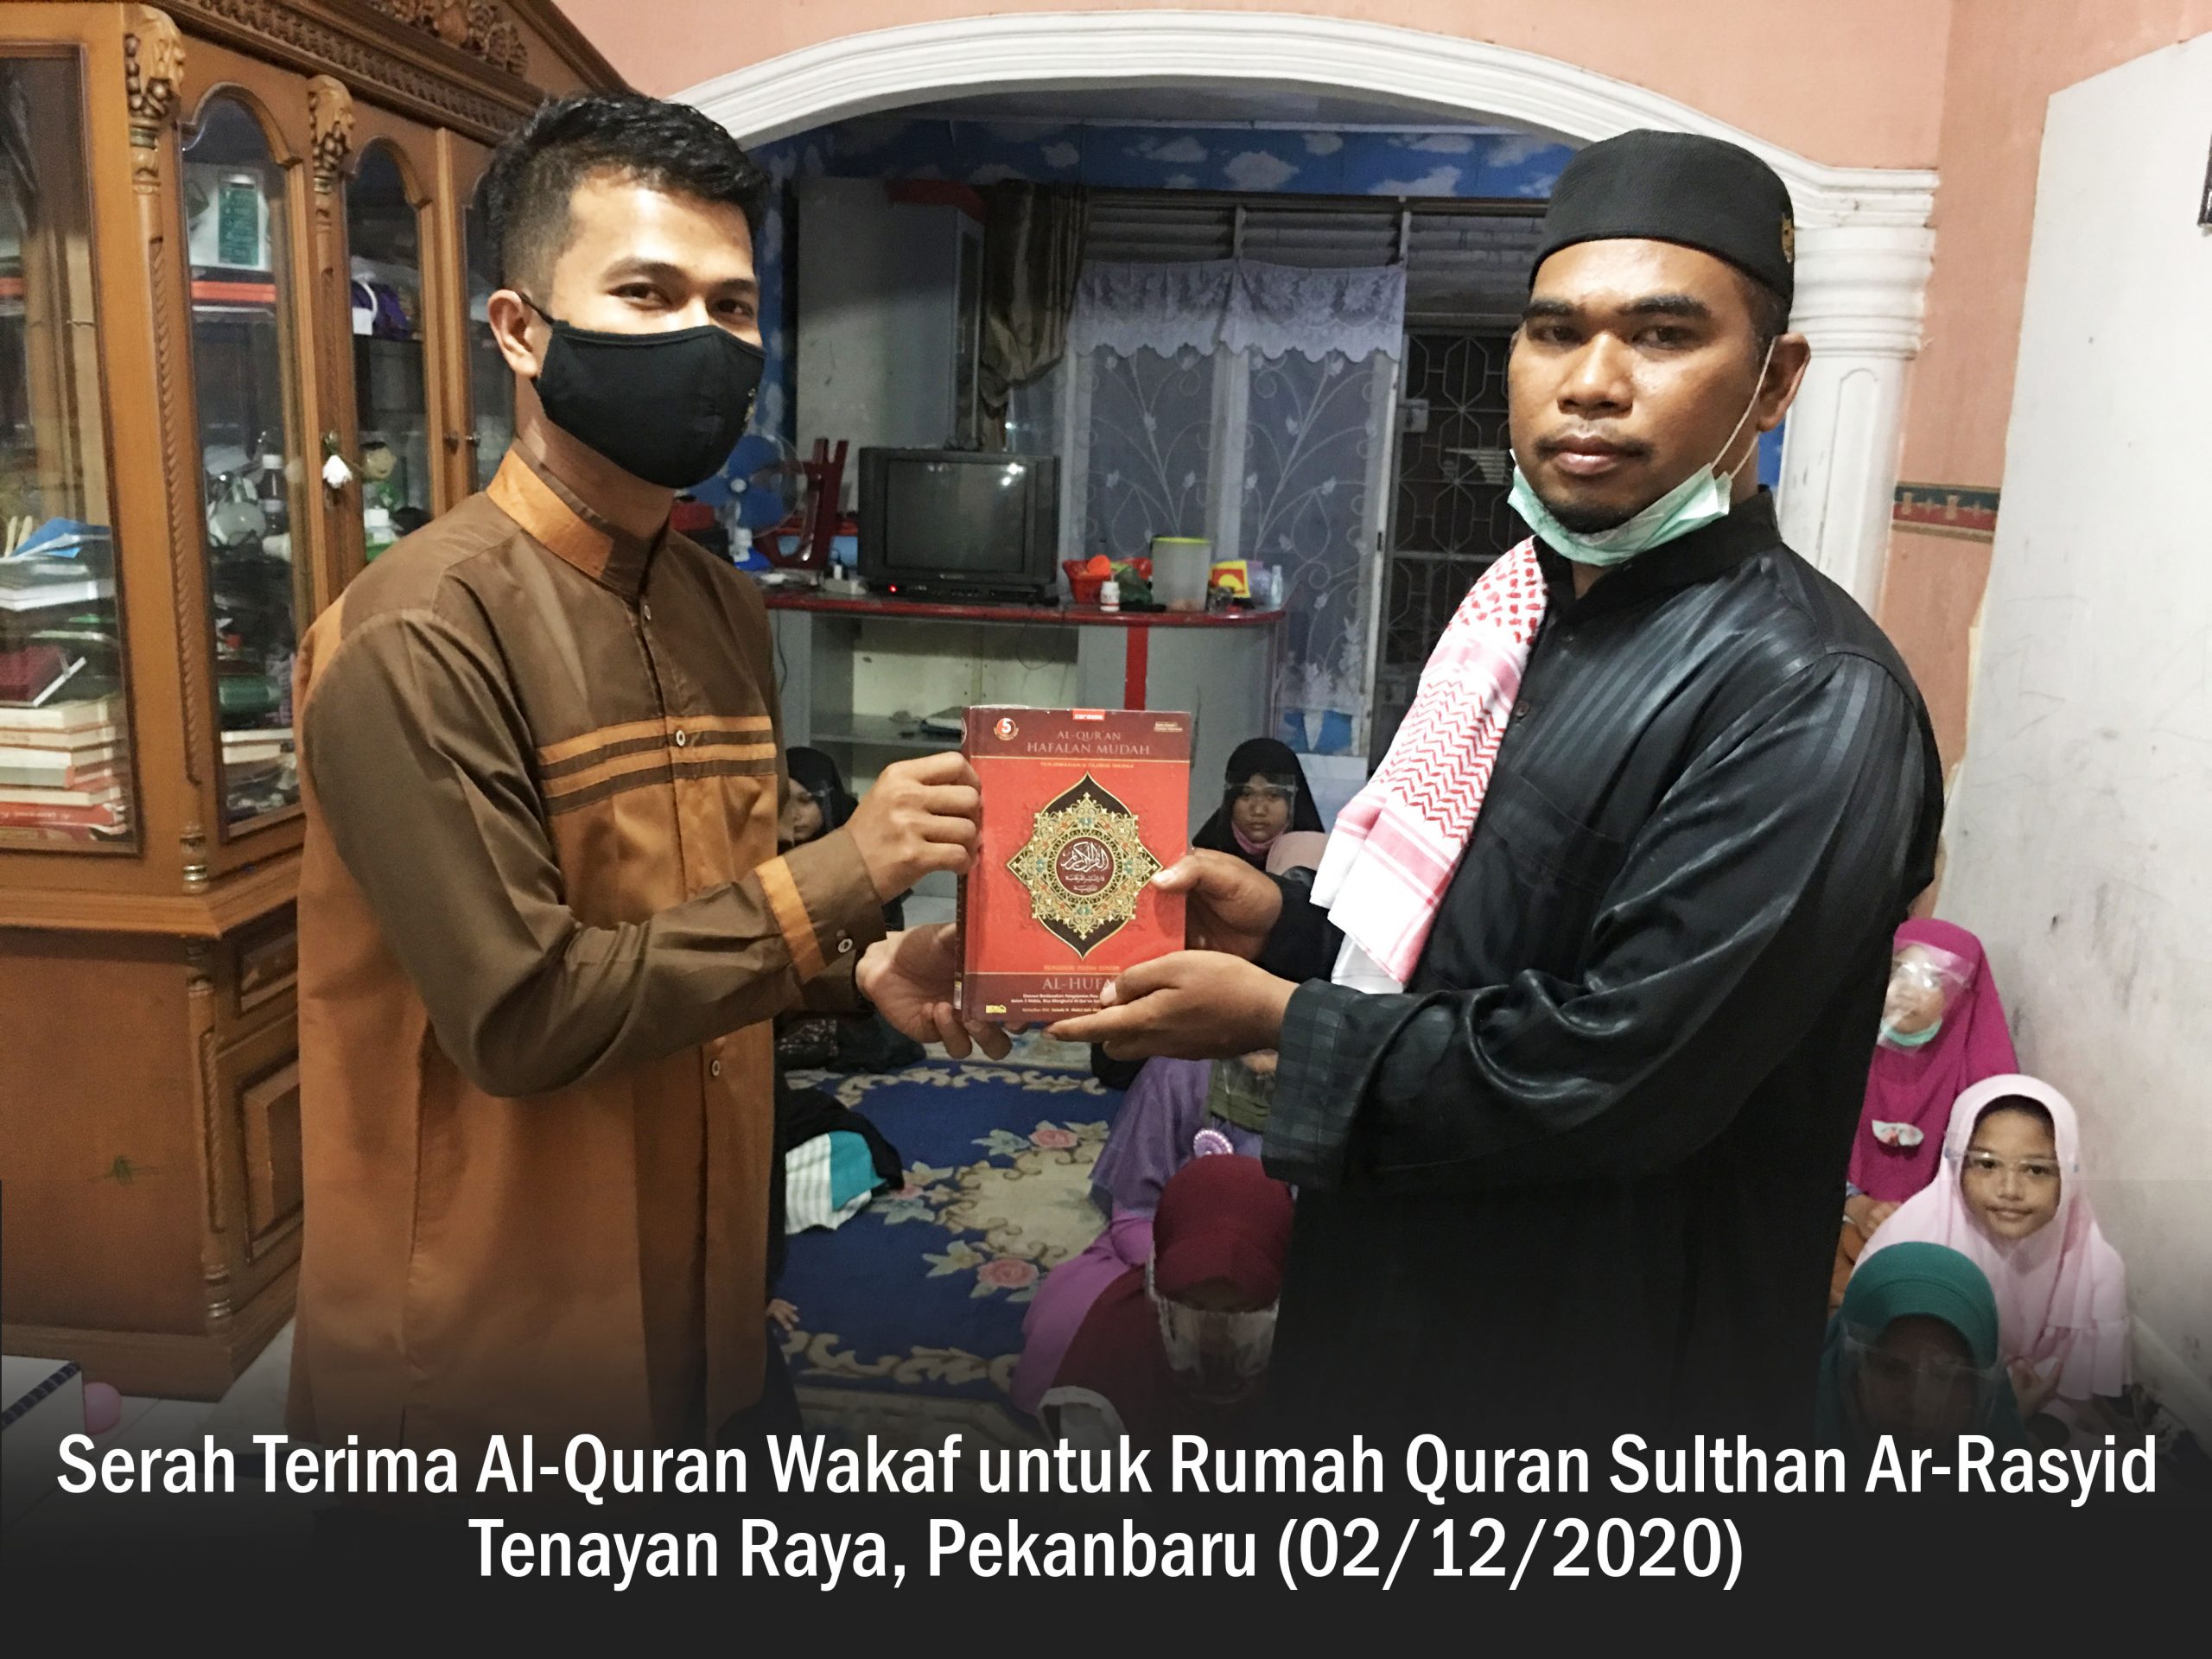 Laporan Penyaluran Al-Quran ke Rumah Quran Sultan Ar-Rasyid Tenayan Raya (02/12/2020)